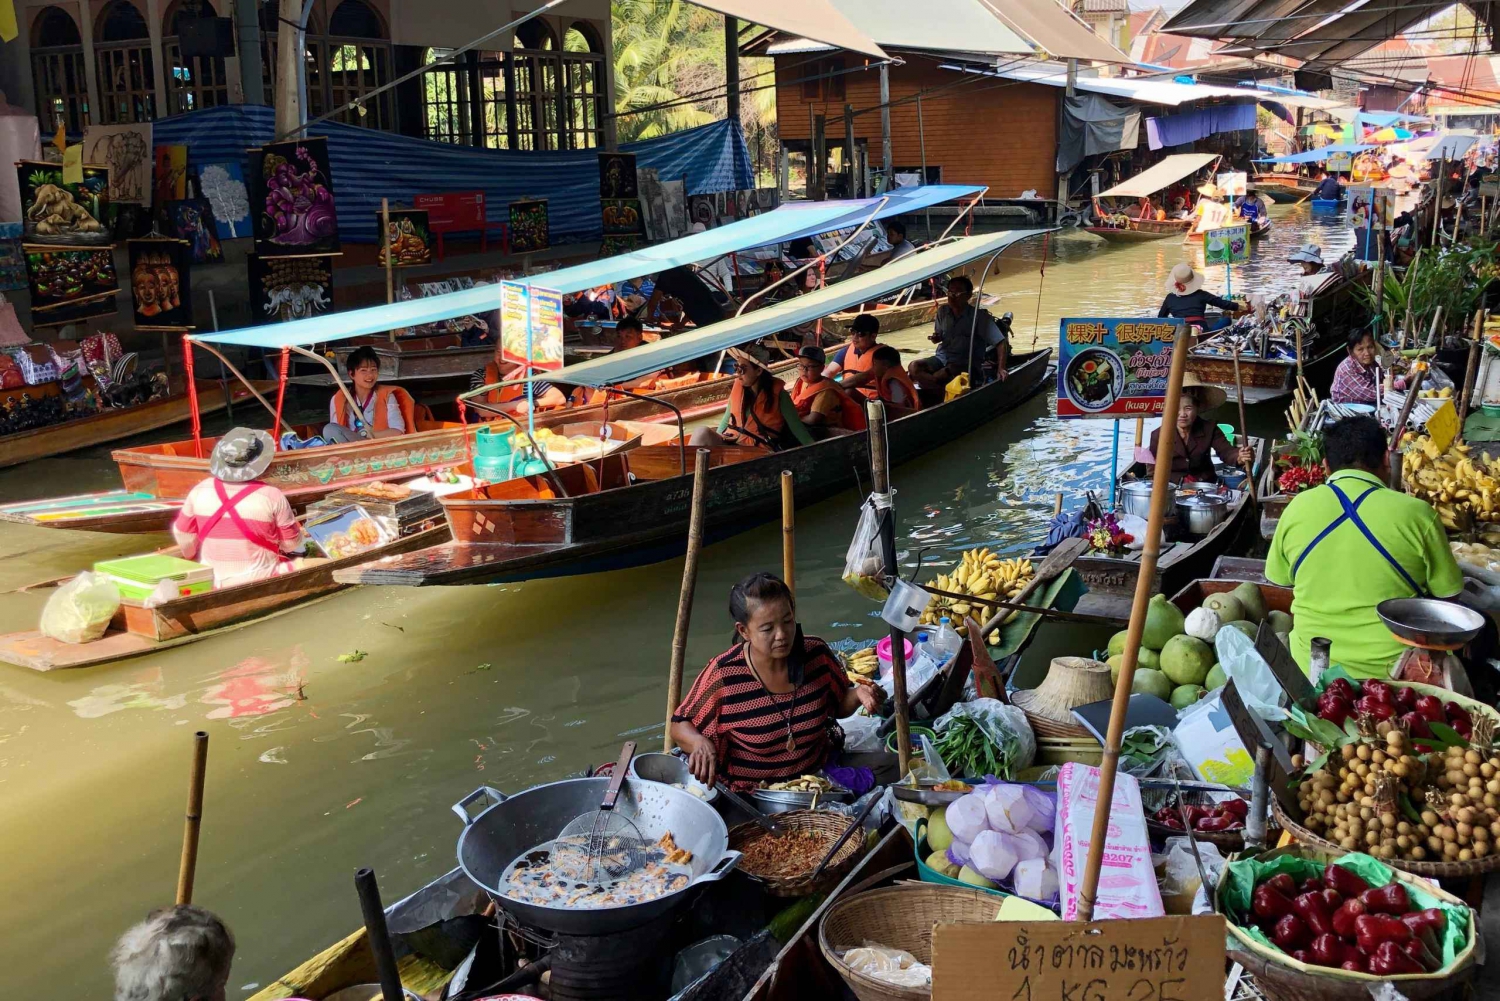 Mercado flutuante Damnoen Saduak e rio Kwai